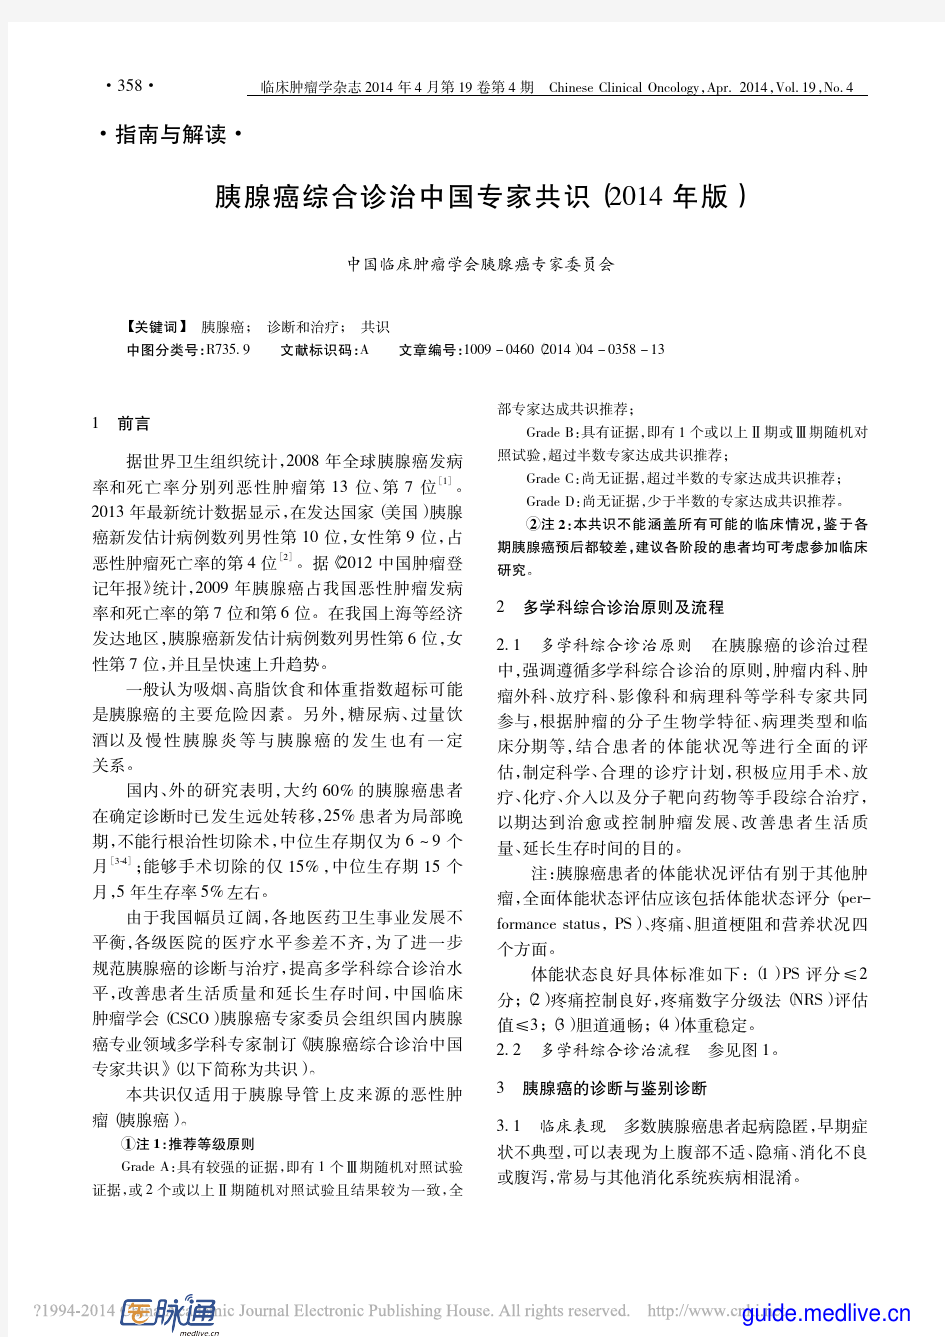 胰腺癌综合诊治中国专家共识(2014年版)